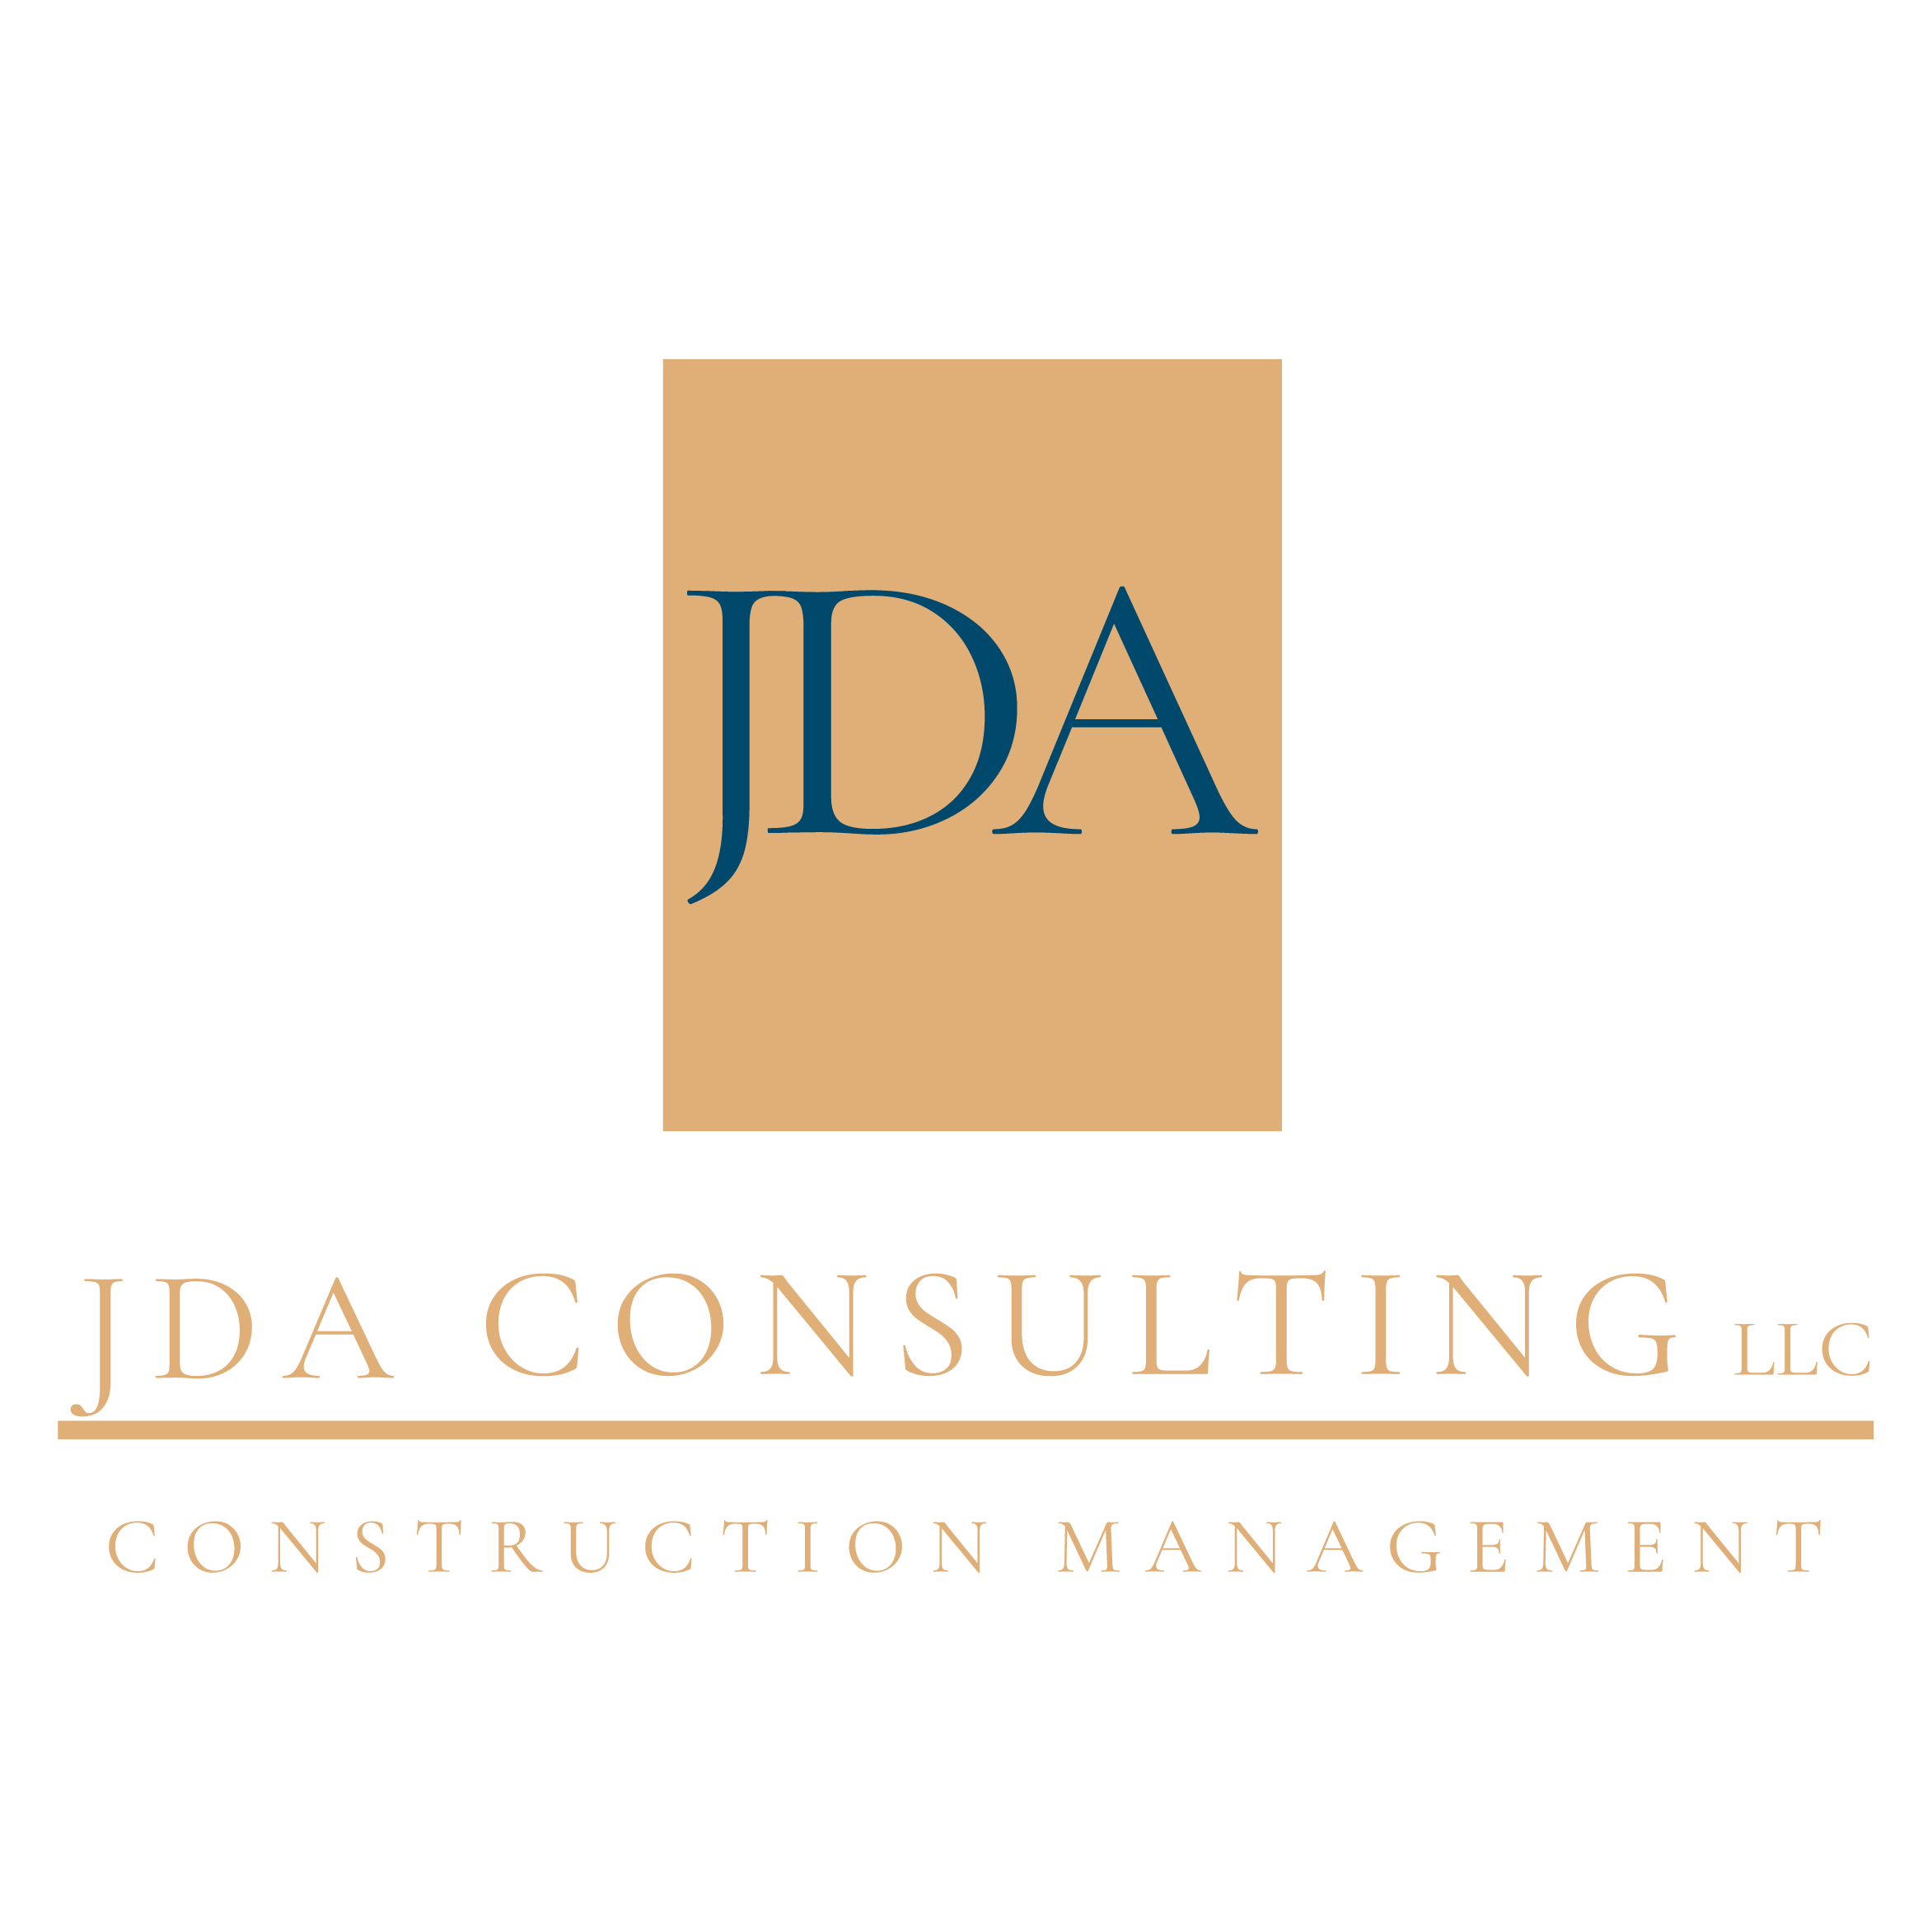 JDA Consulting LLC